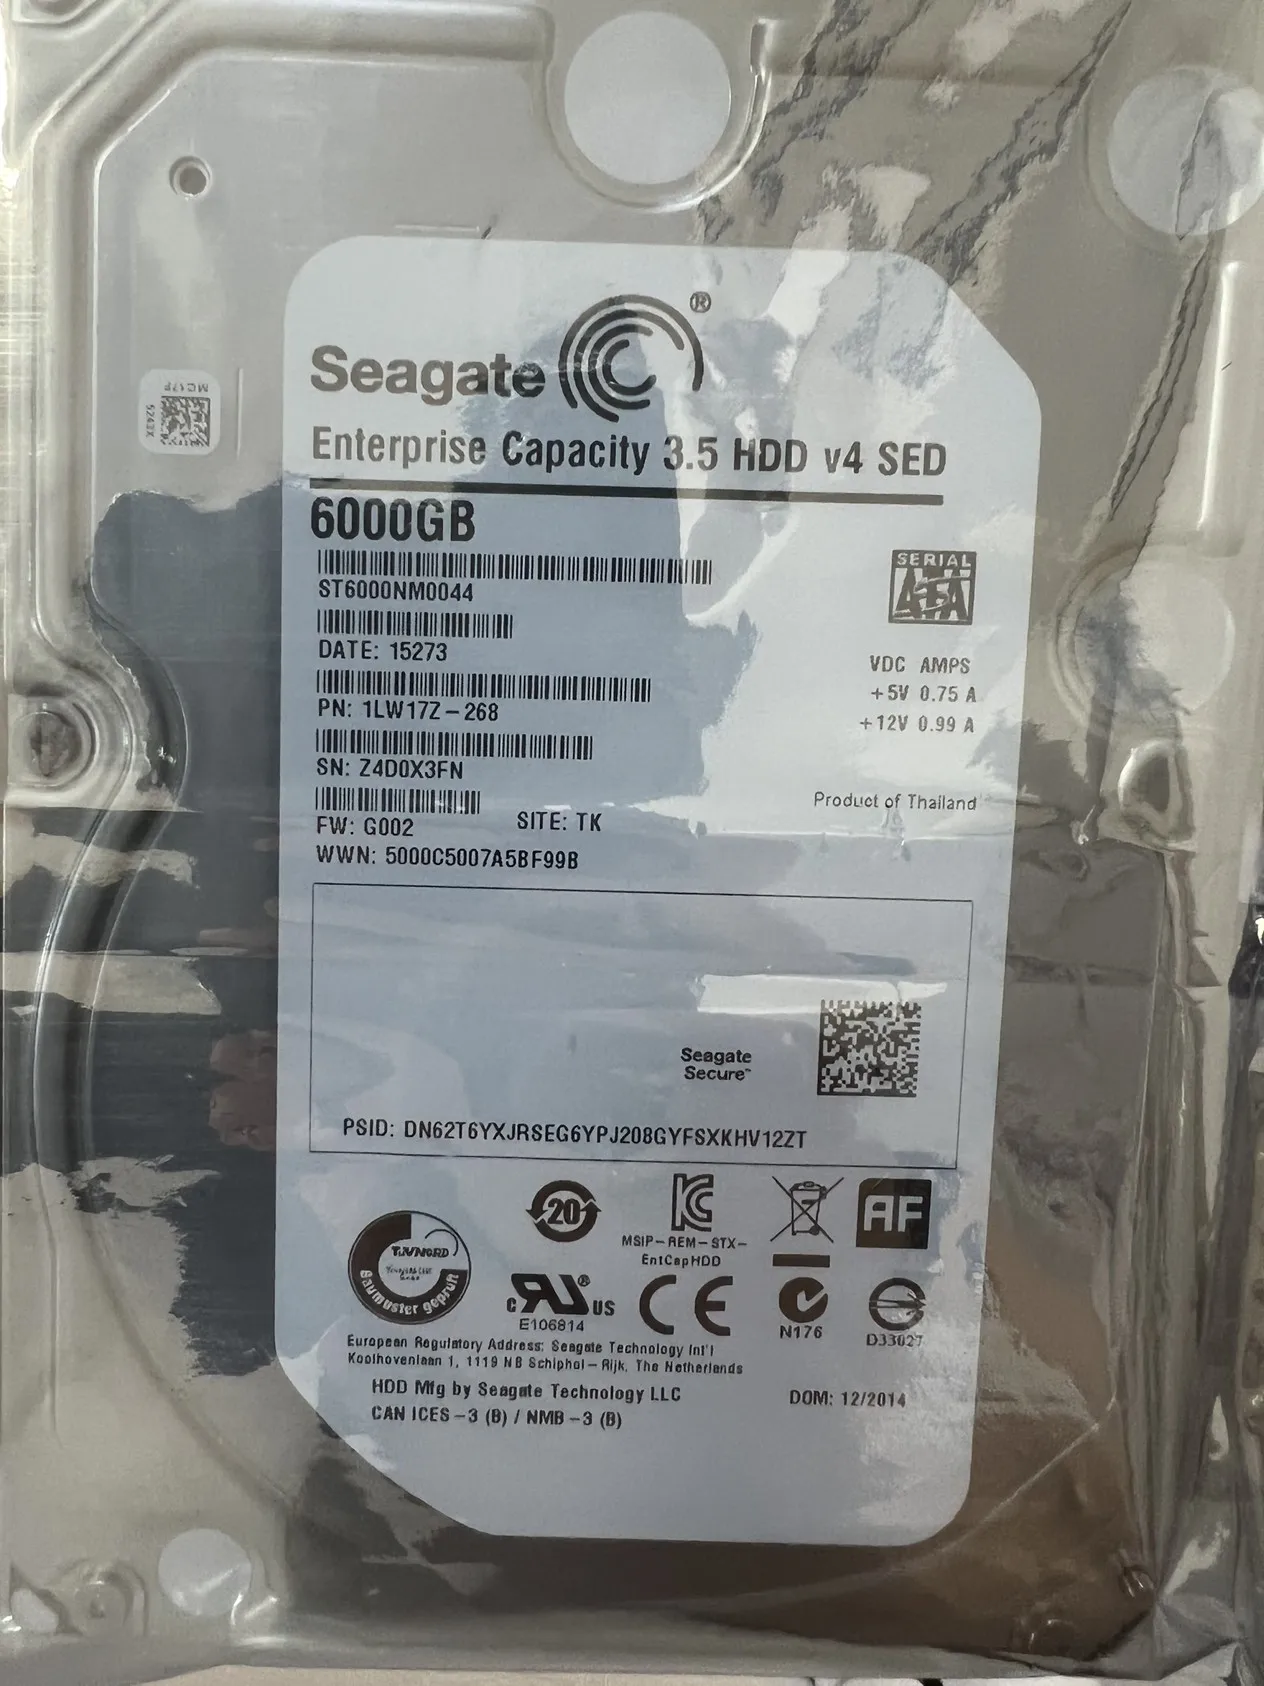 2022 Для жесткого диска Seagate 6T enterprise, 6 ТБ серверного жесткого диска, регистратора мониторинга массива NAS с кэш-памятью от 7200 до 128 М